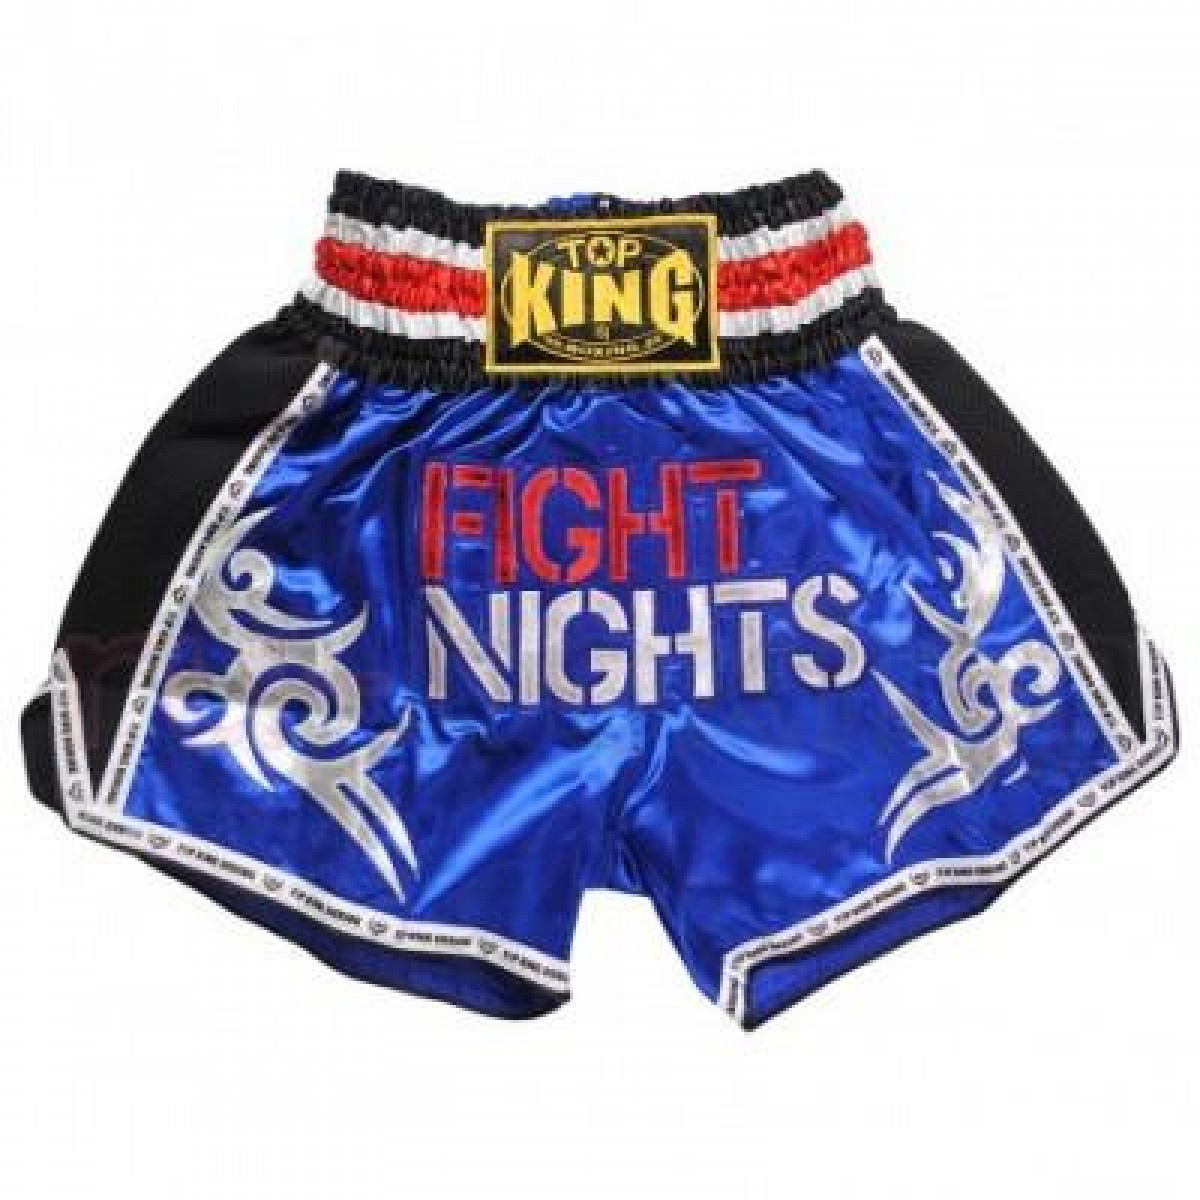 Шорты для тайского бокса Top King Fights Nights синие